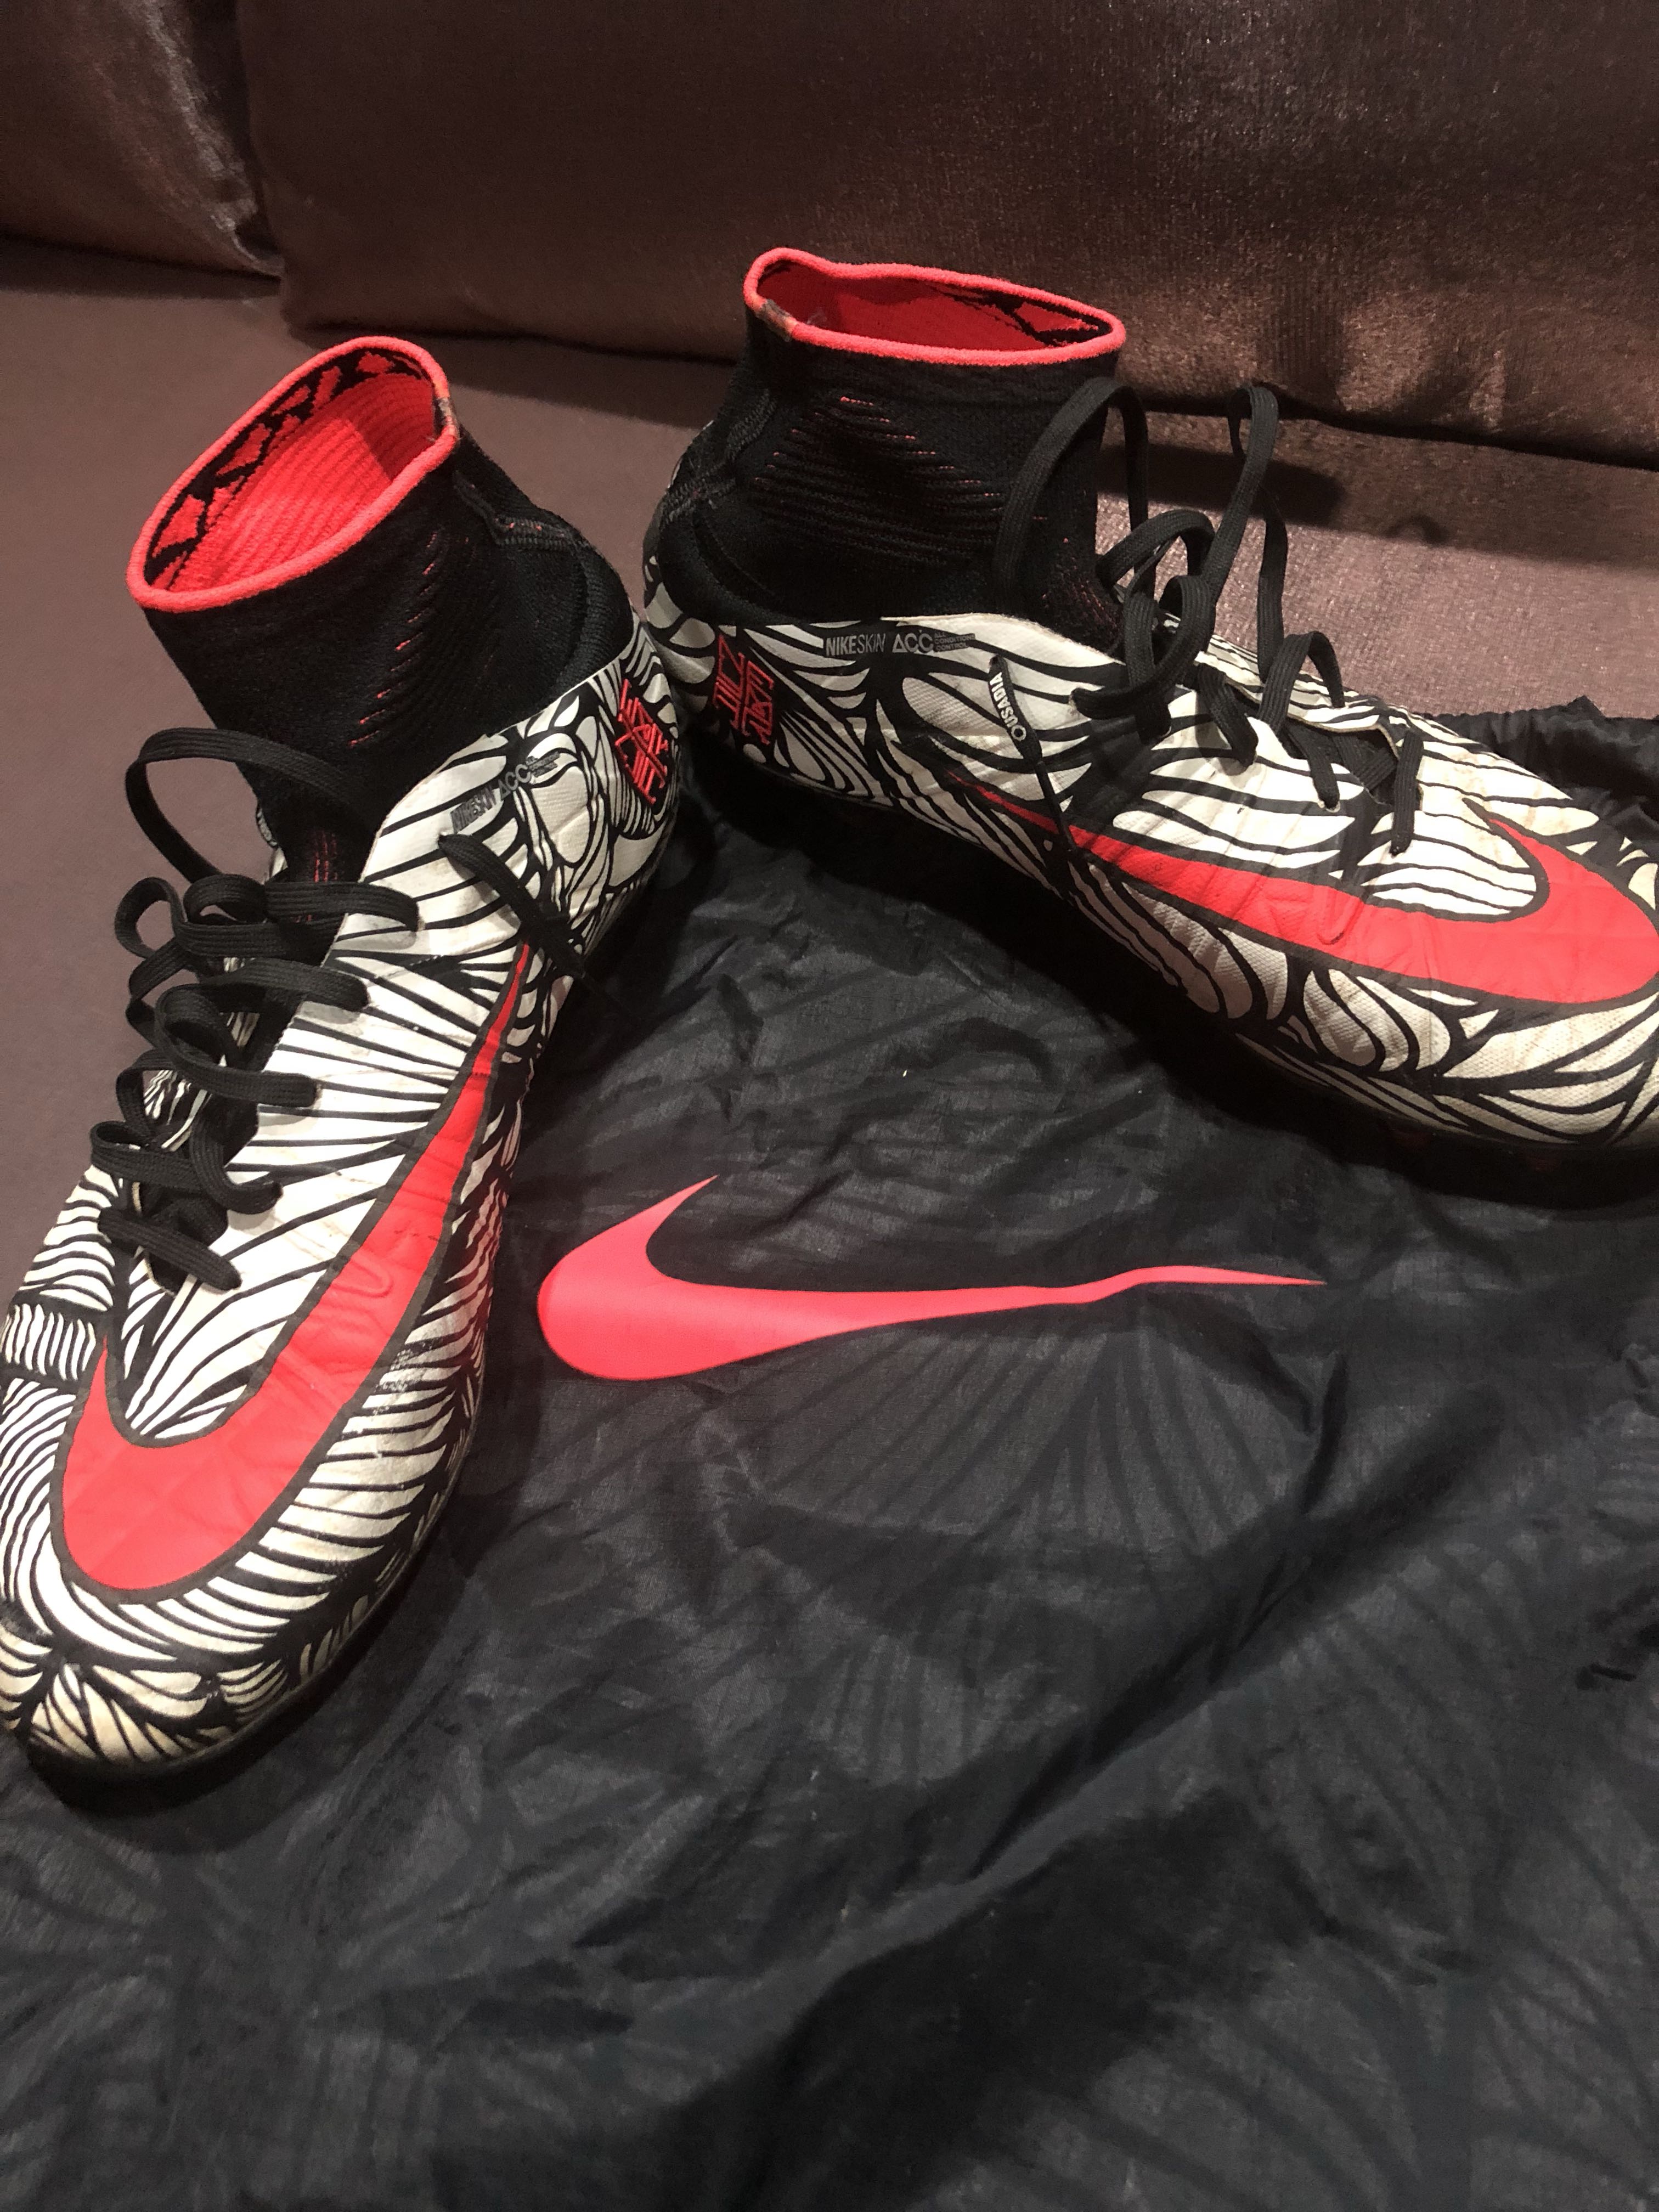 neymar boots size 2